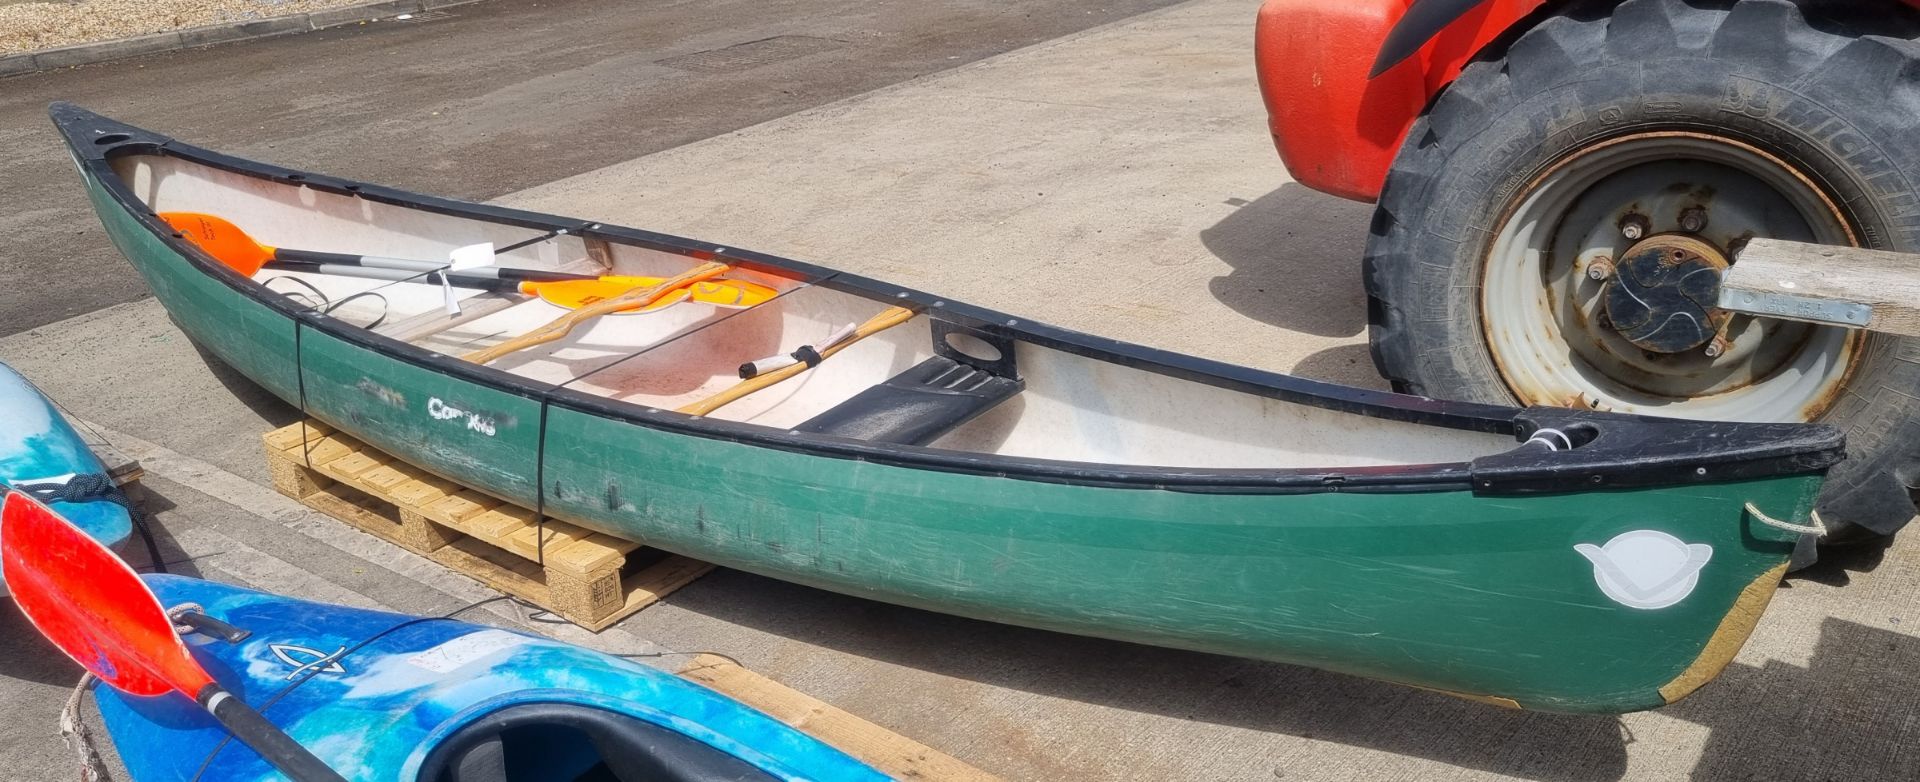 V Ranger canoe 11 - L491 x W89 x H35cm - Image 4 of 6